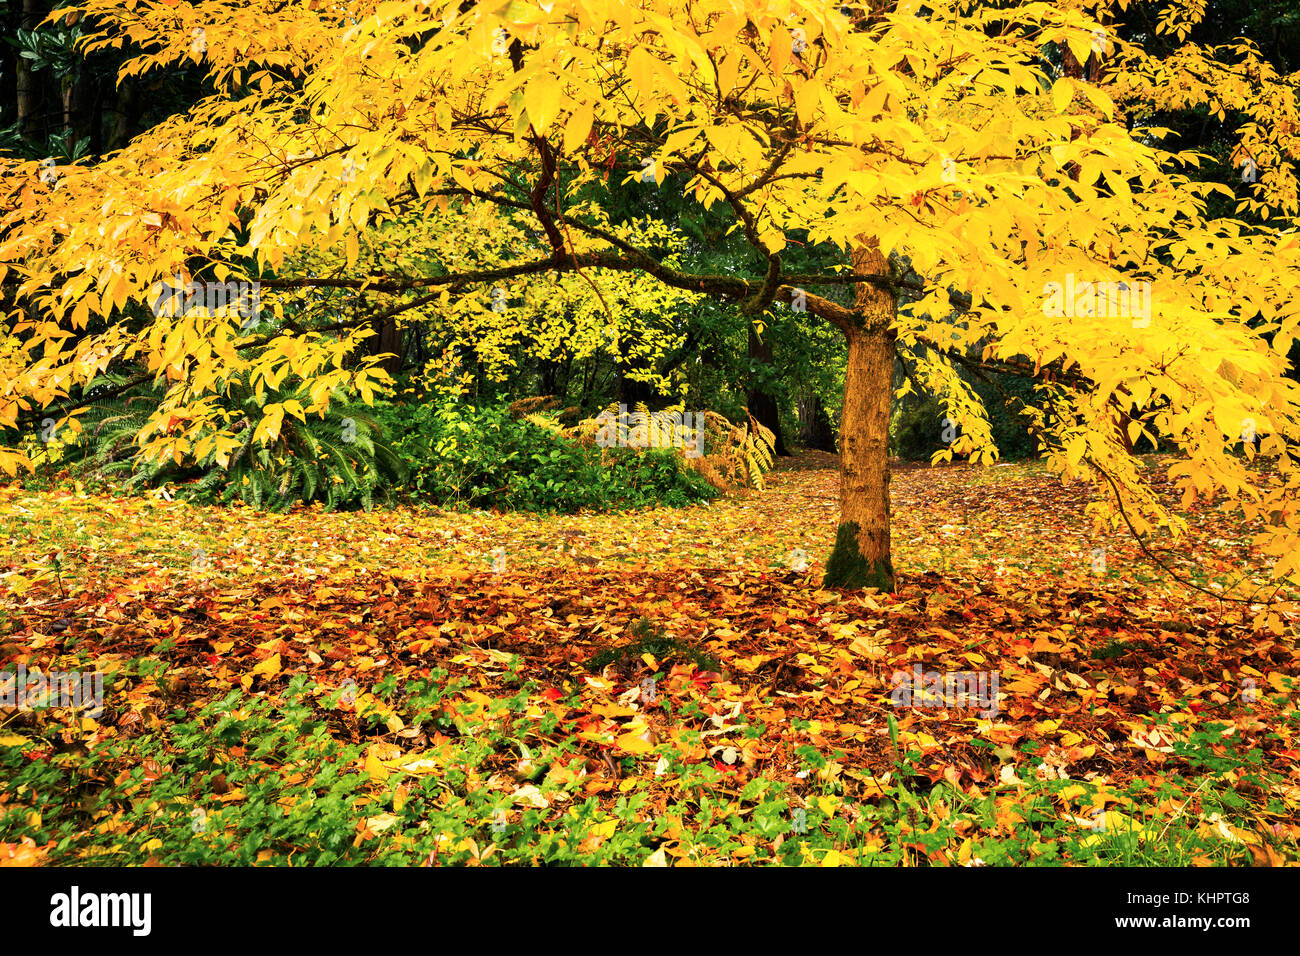 Arbre à feuillage d'automne jaune à Seattle à Washington Park Arboretum Botanical garden Banque D'Images